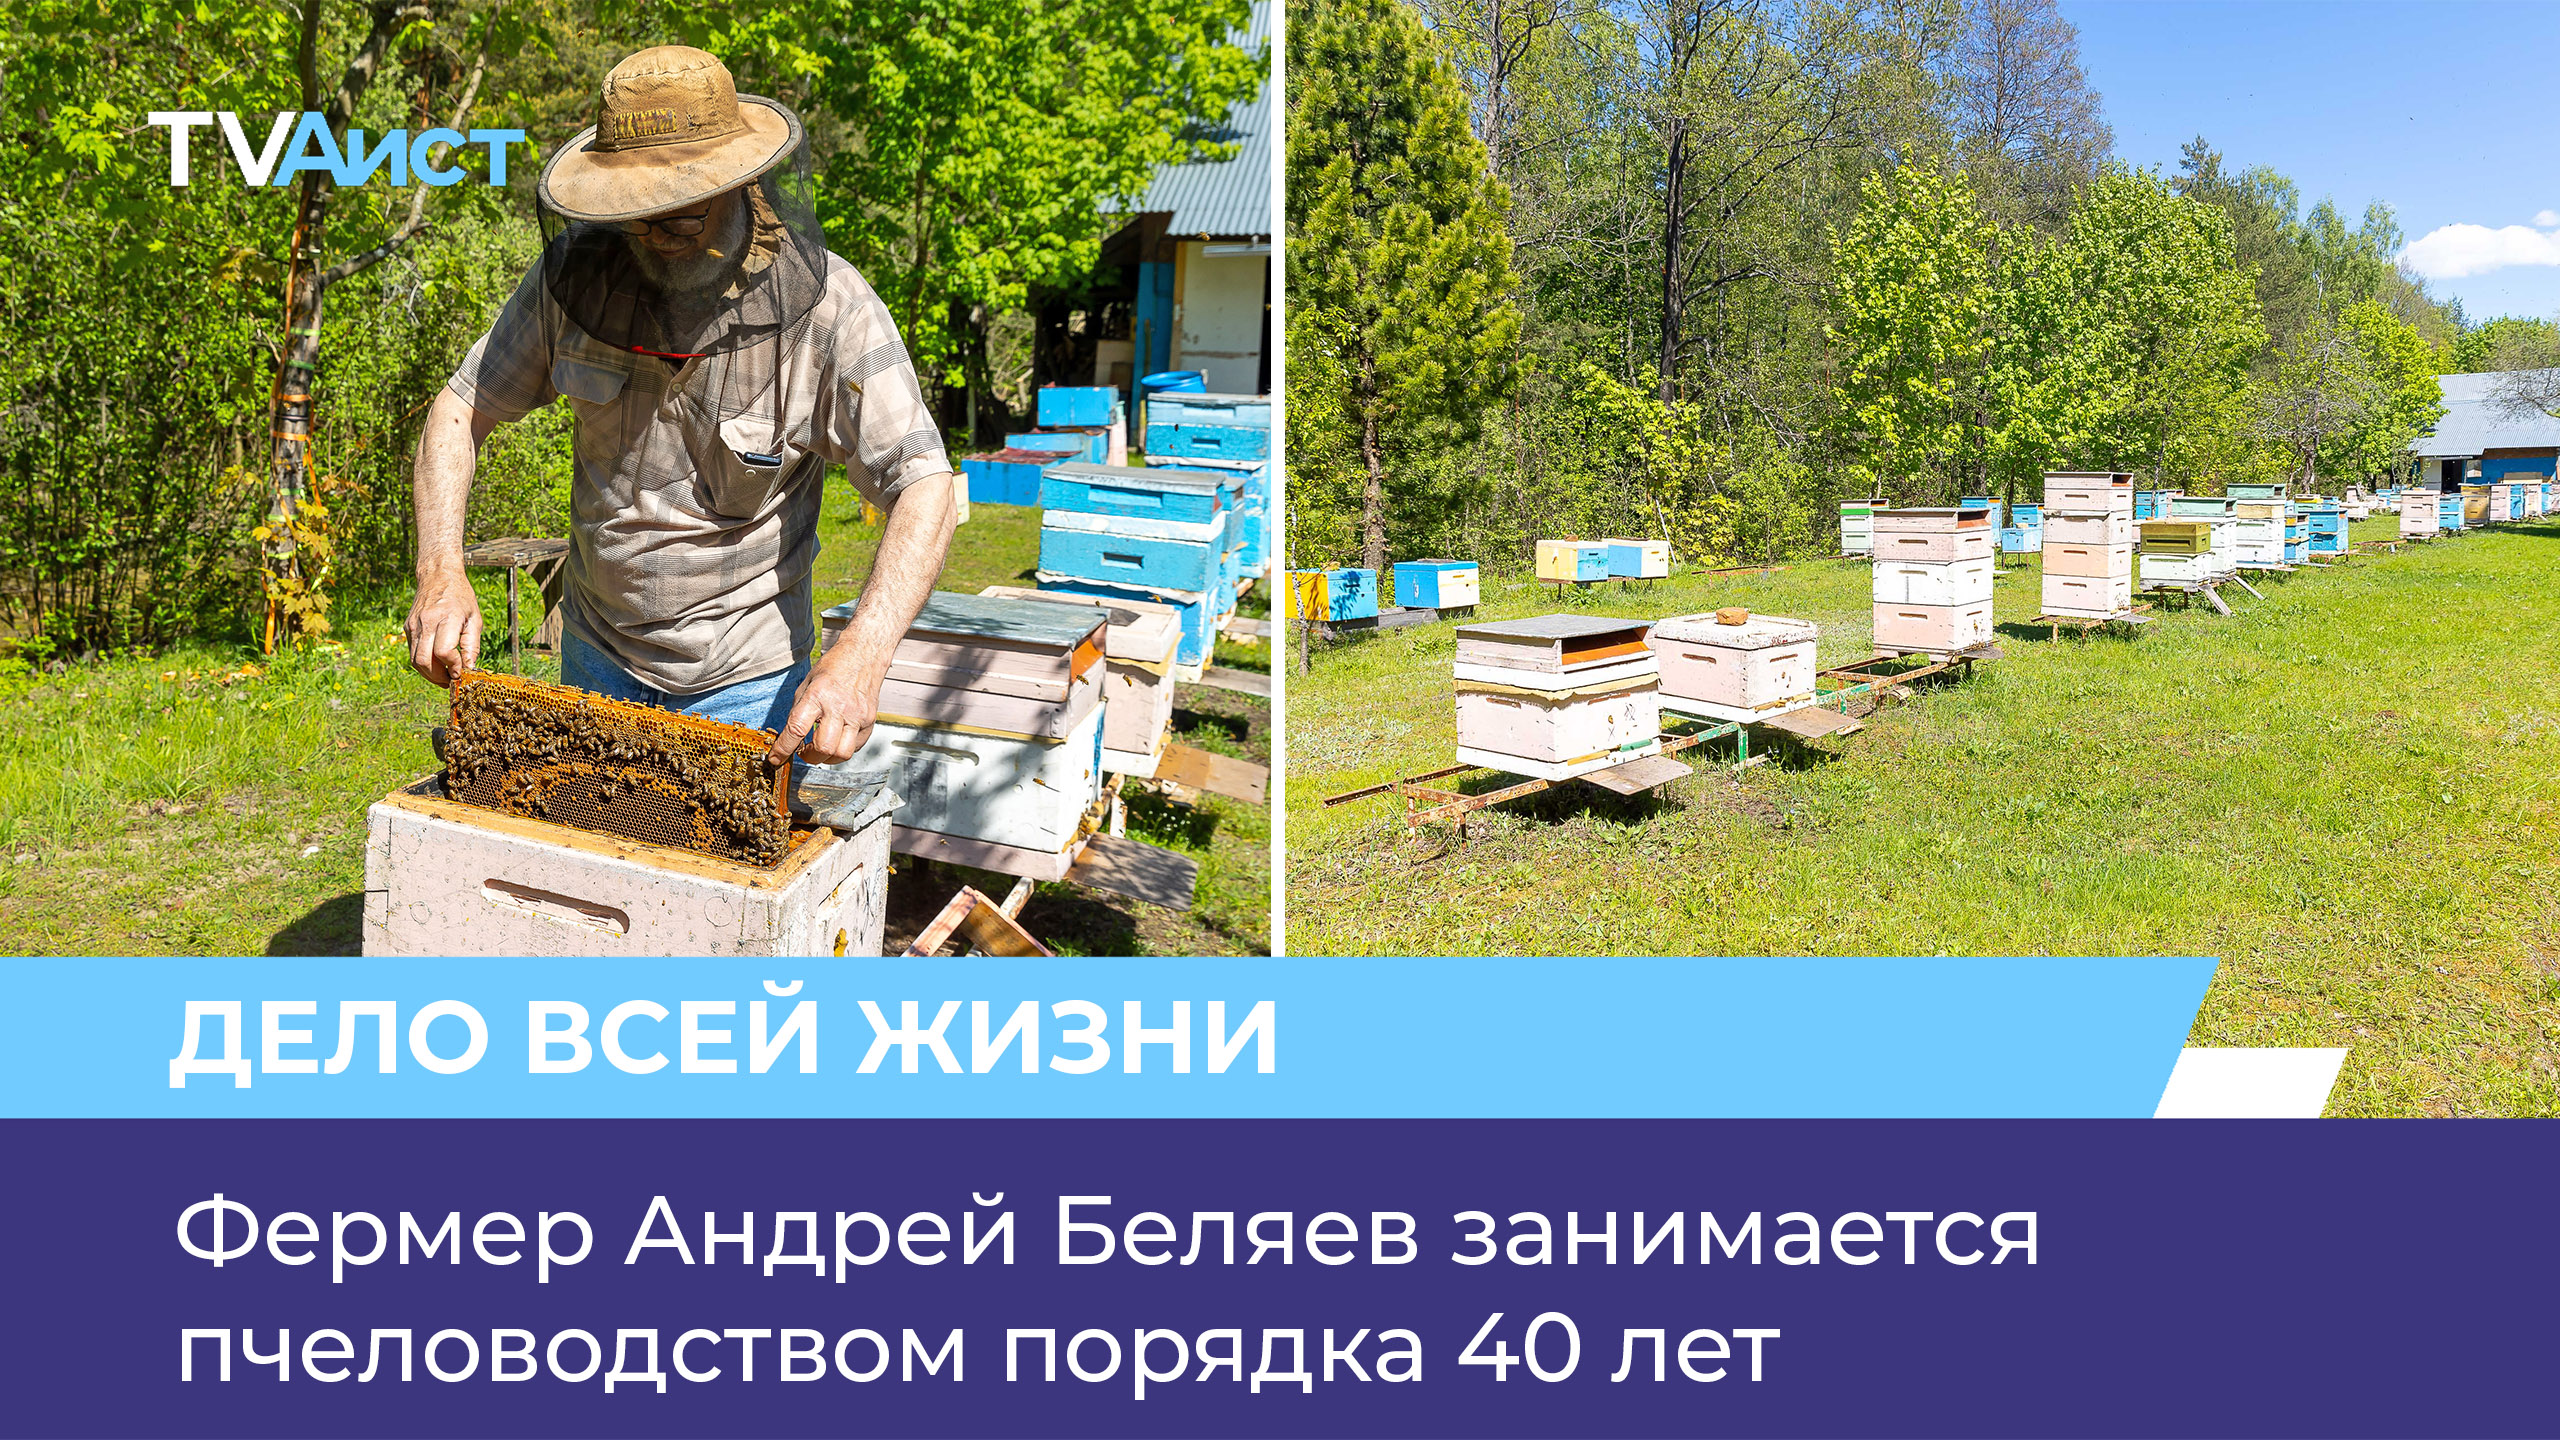 Фермер Андрей Беляев занимается пчеловодством порядка 40 лет